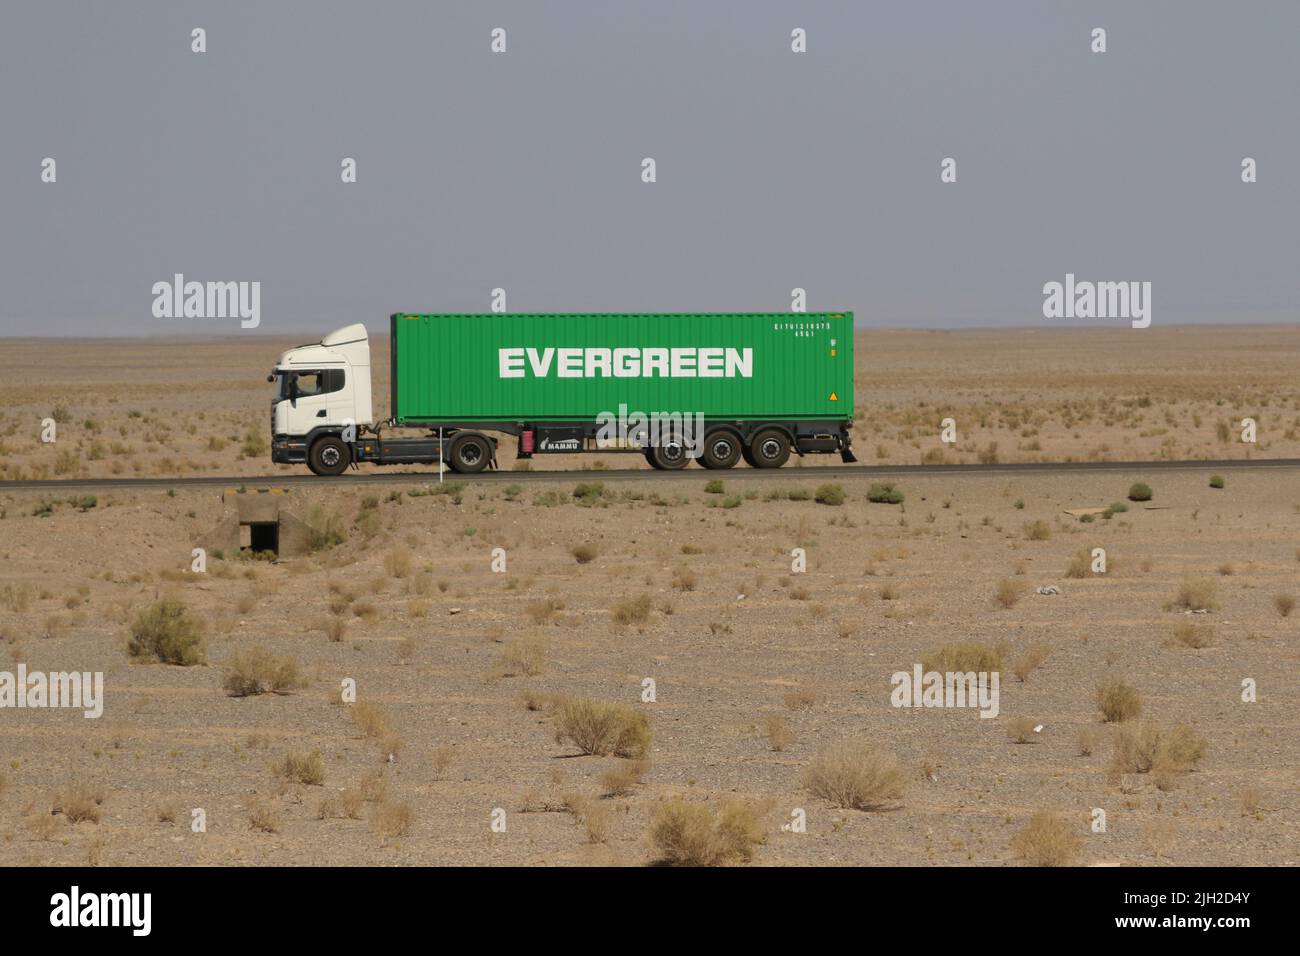 Evergreen in der Wüste Stock Photo